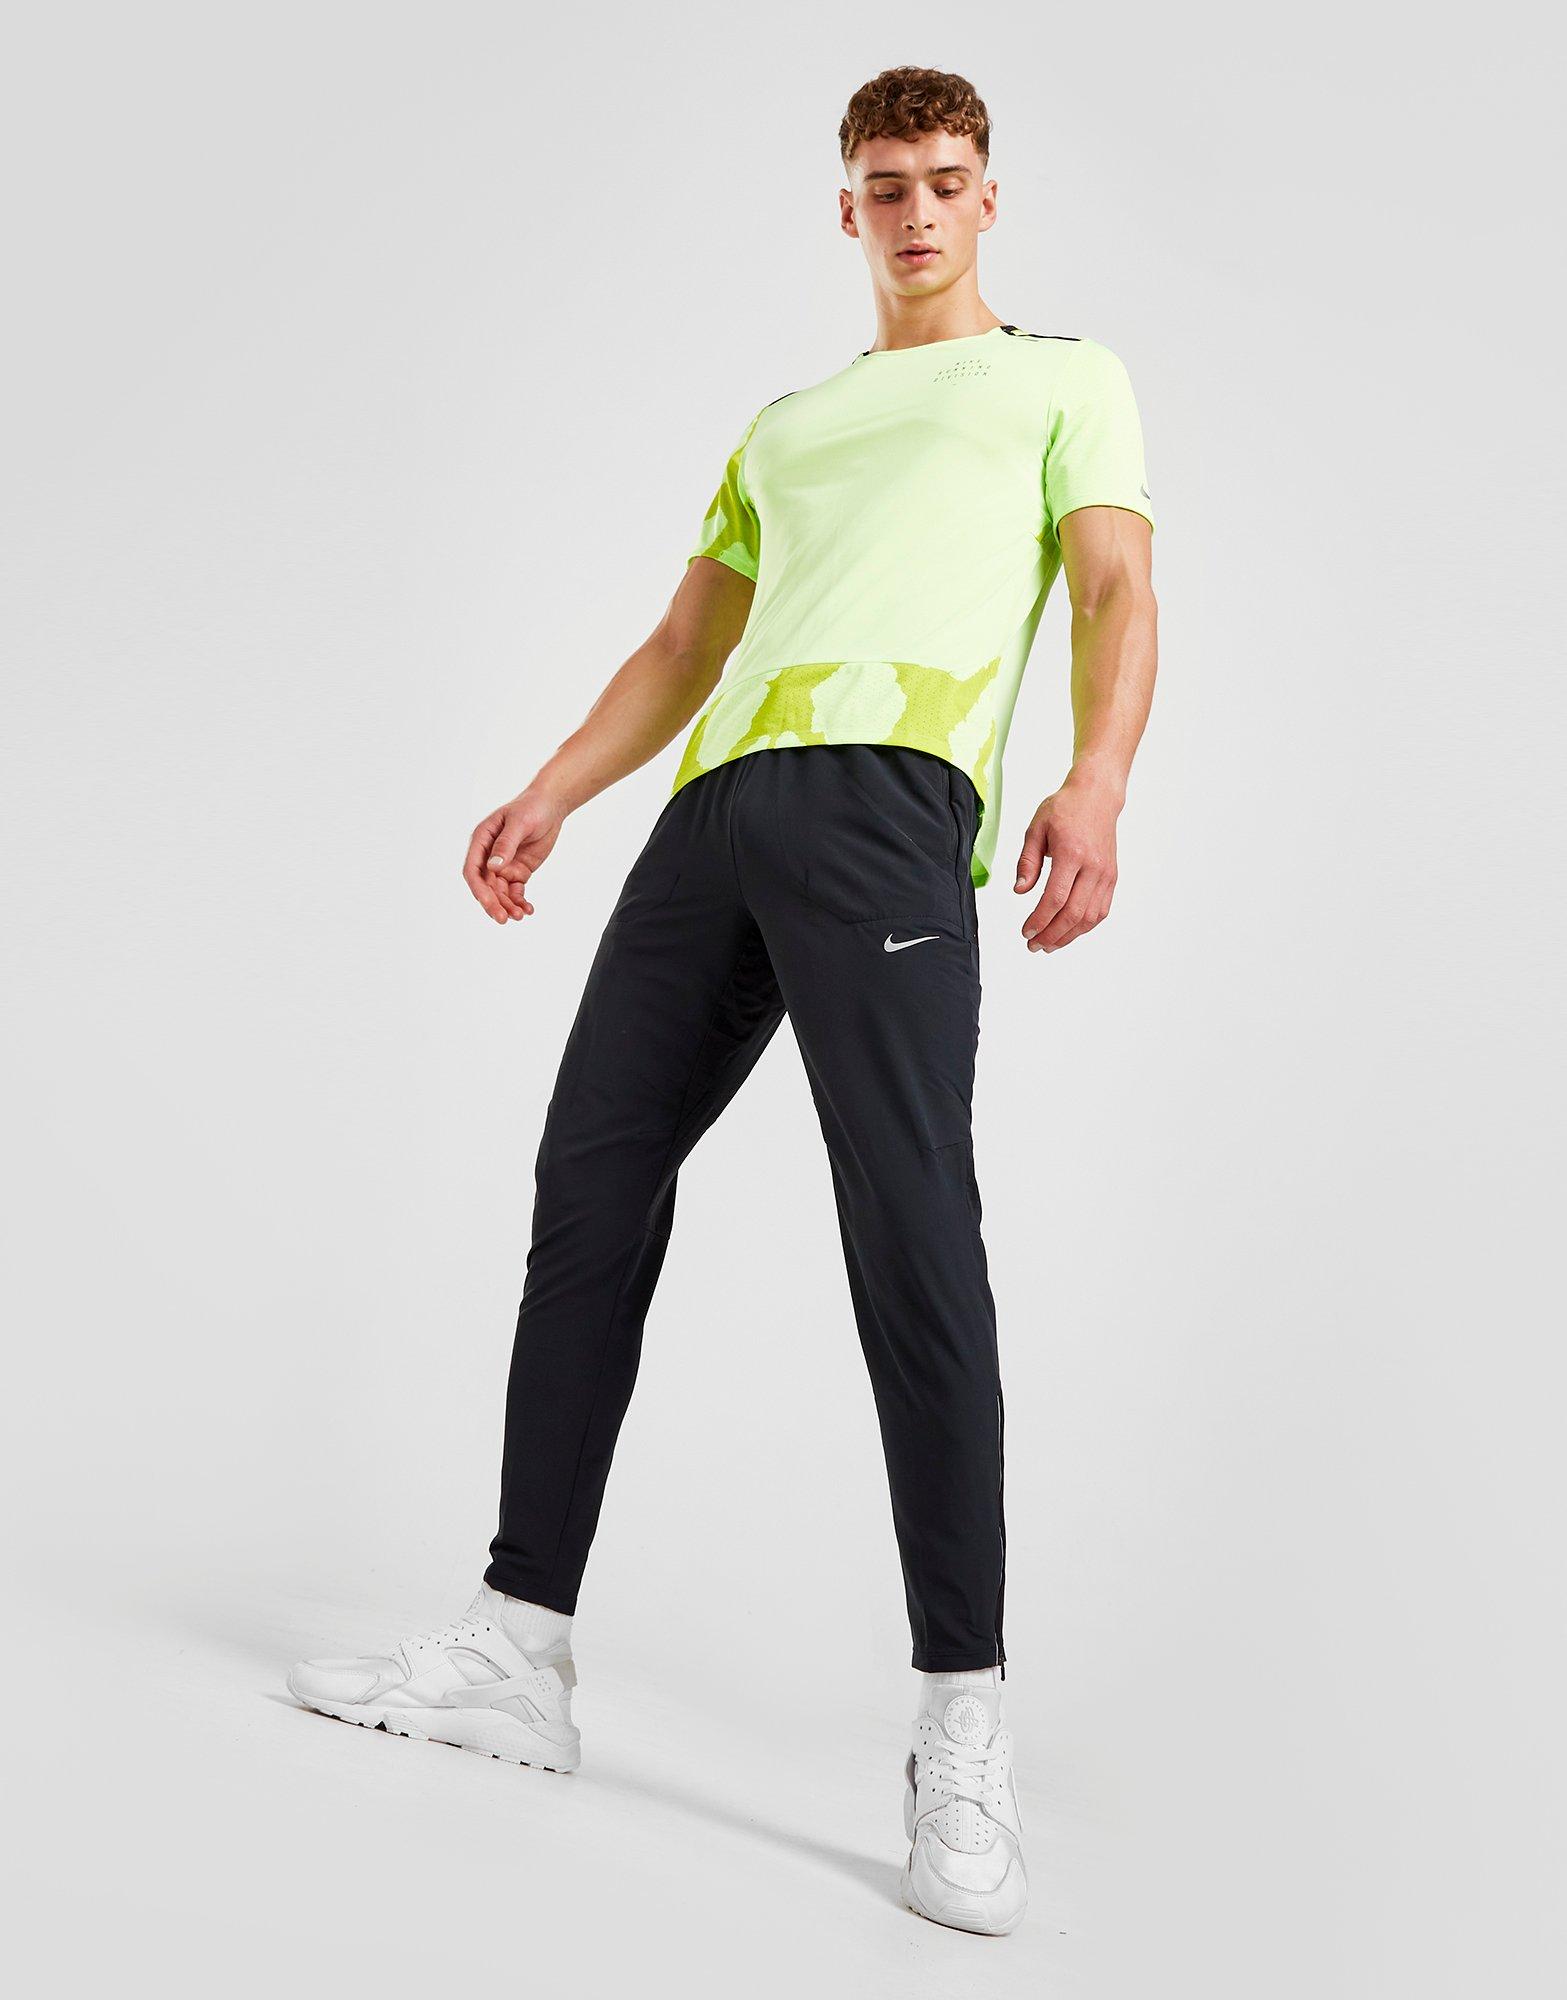 Nike Pantalon de Survêtement Challenger tissé Homme Noir- JD Sports France